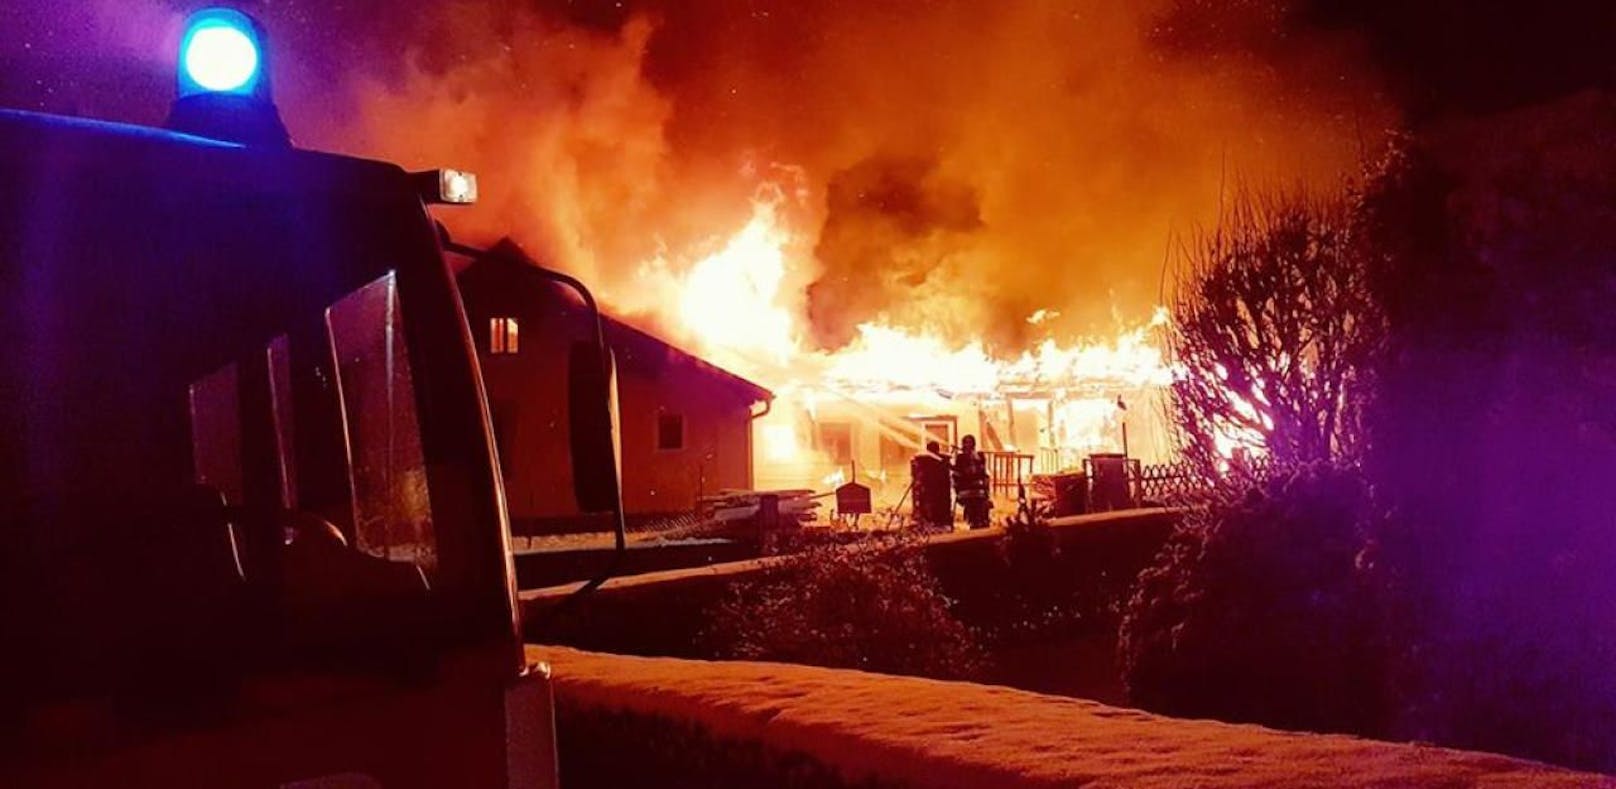 Scheune brannte: Feuer griff auf Wohnhaus über